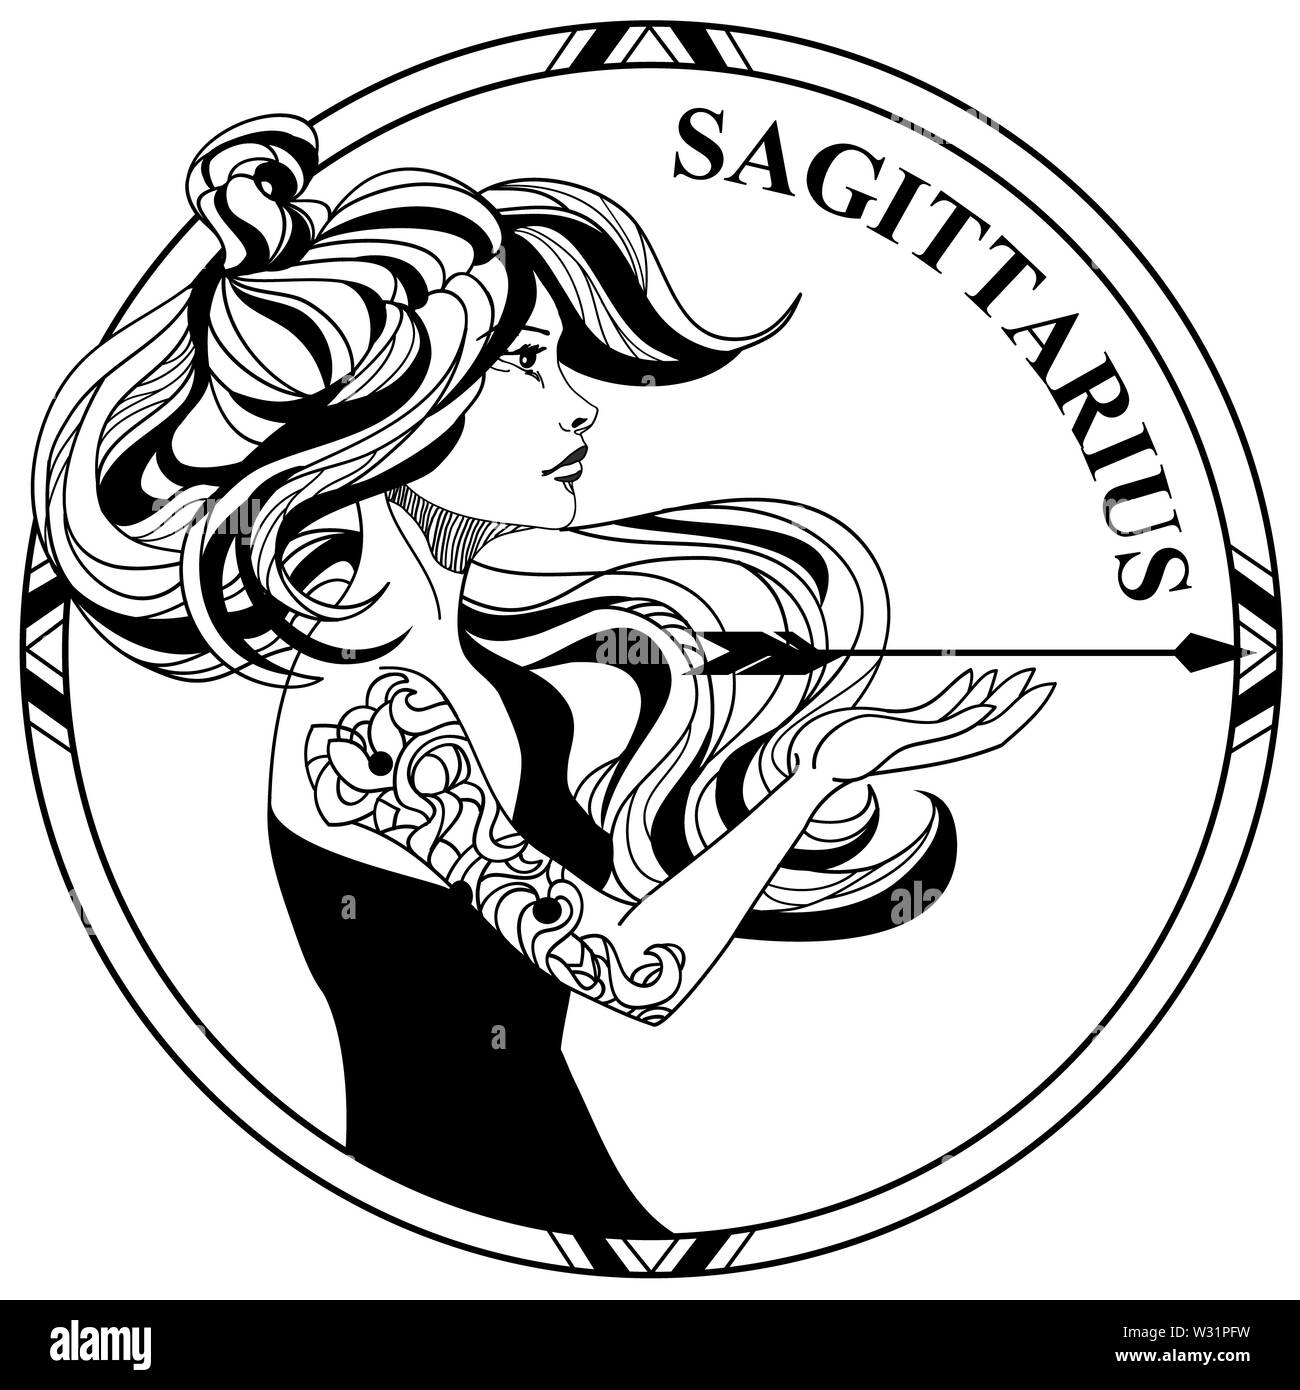 Sagittarius Symbol Designs